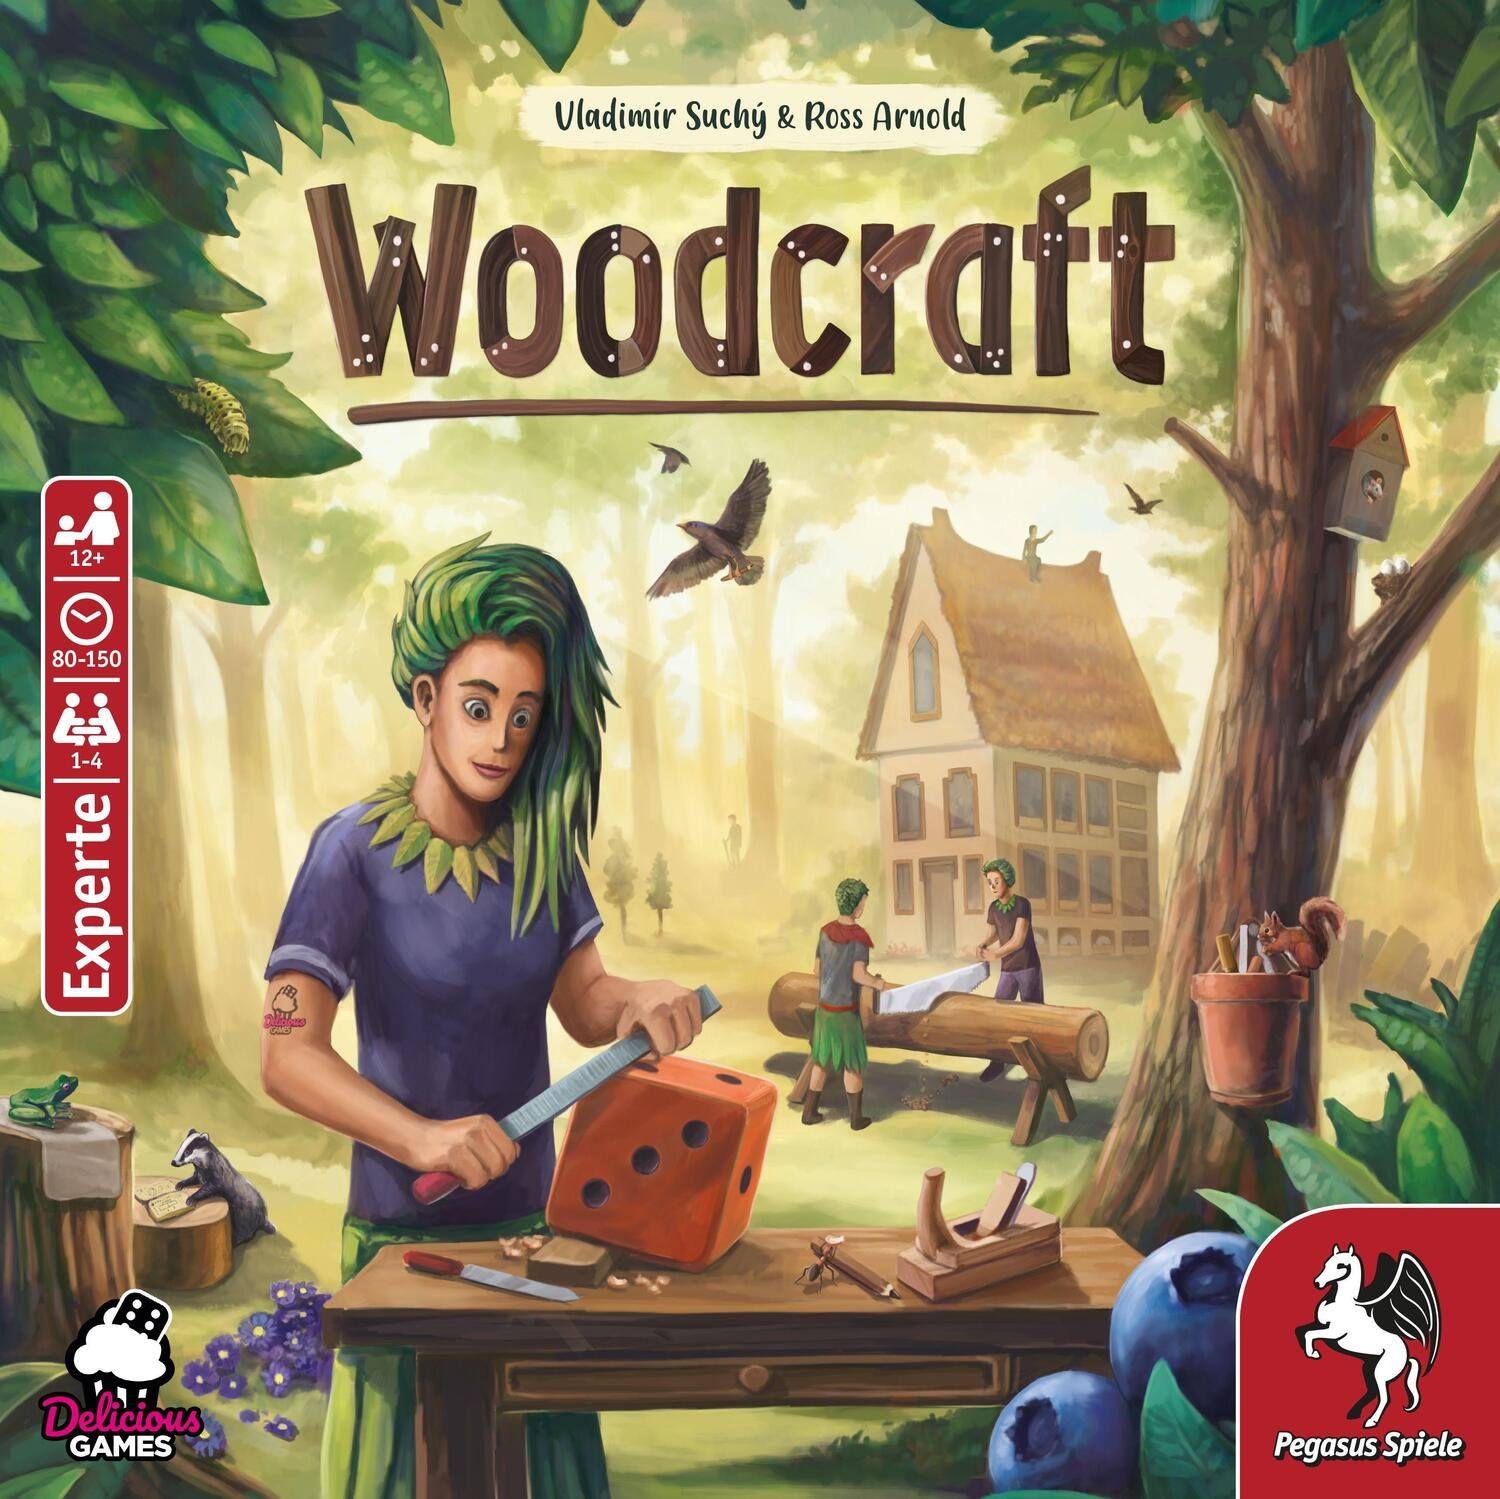 Spiel, Pegasus Spiele Woodcraft